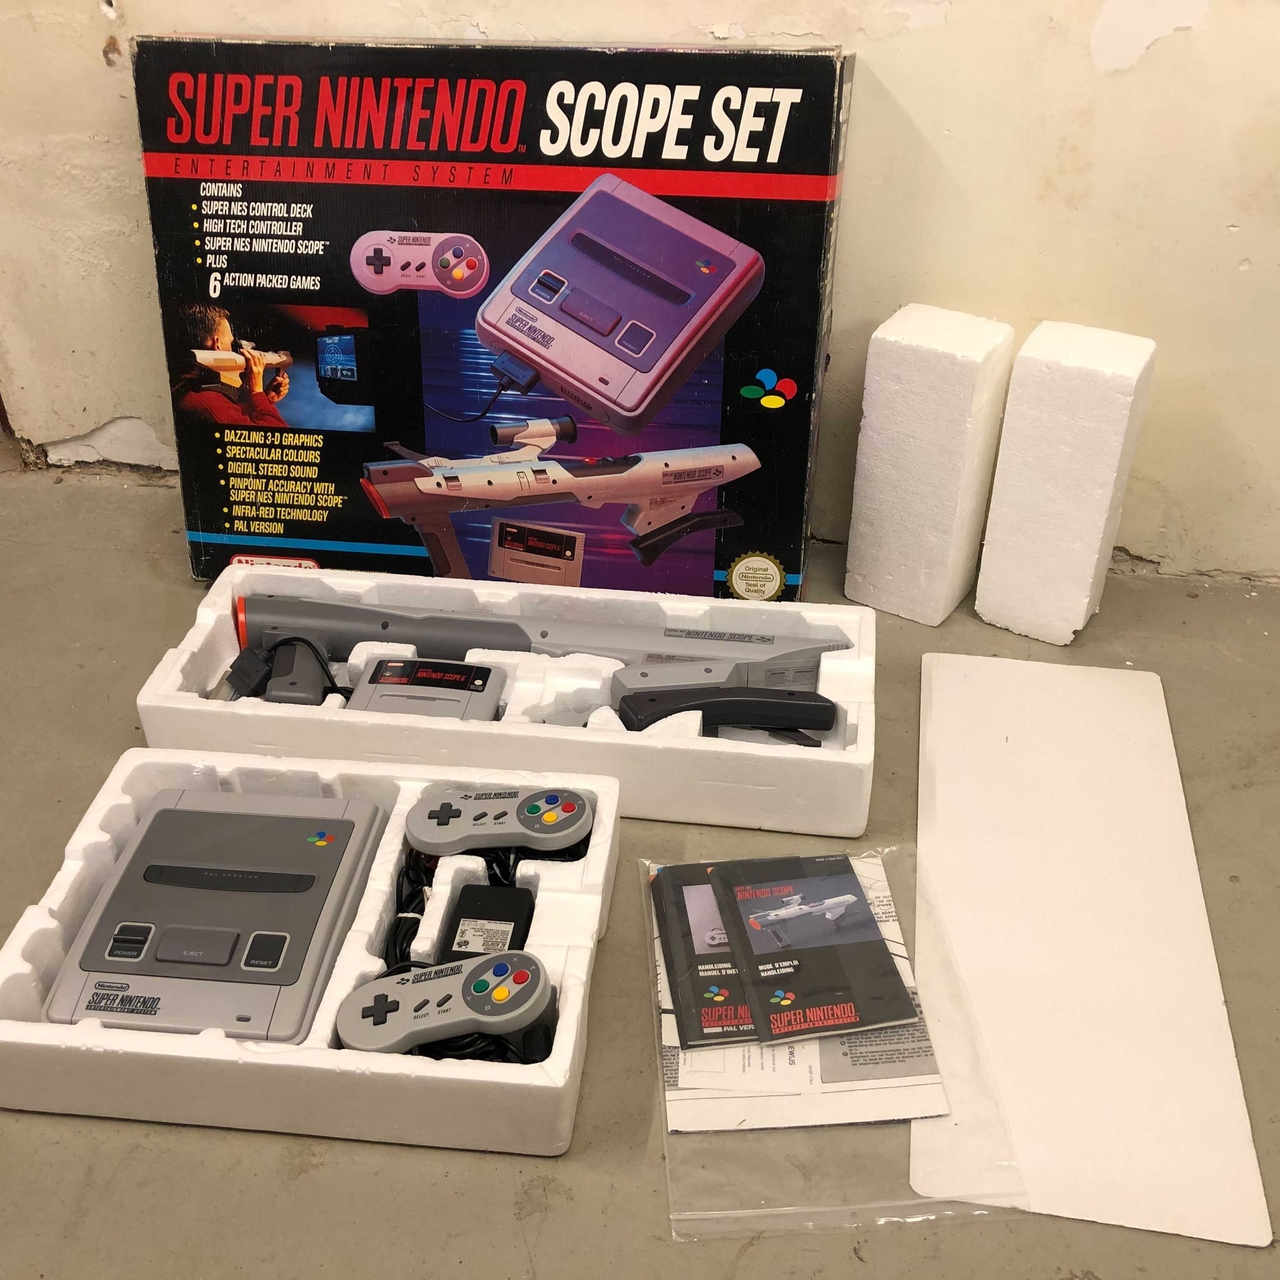 Super Nintendo Starter Pack - Scope Set [Complete] - Super Nintendo Hardware - 7